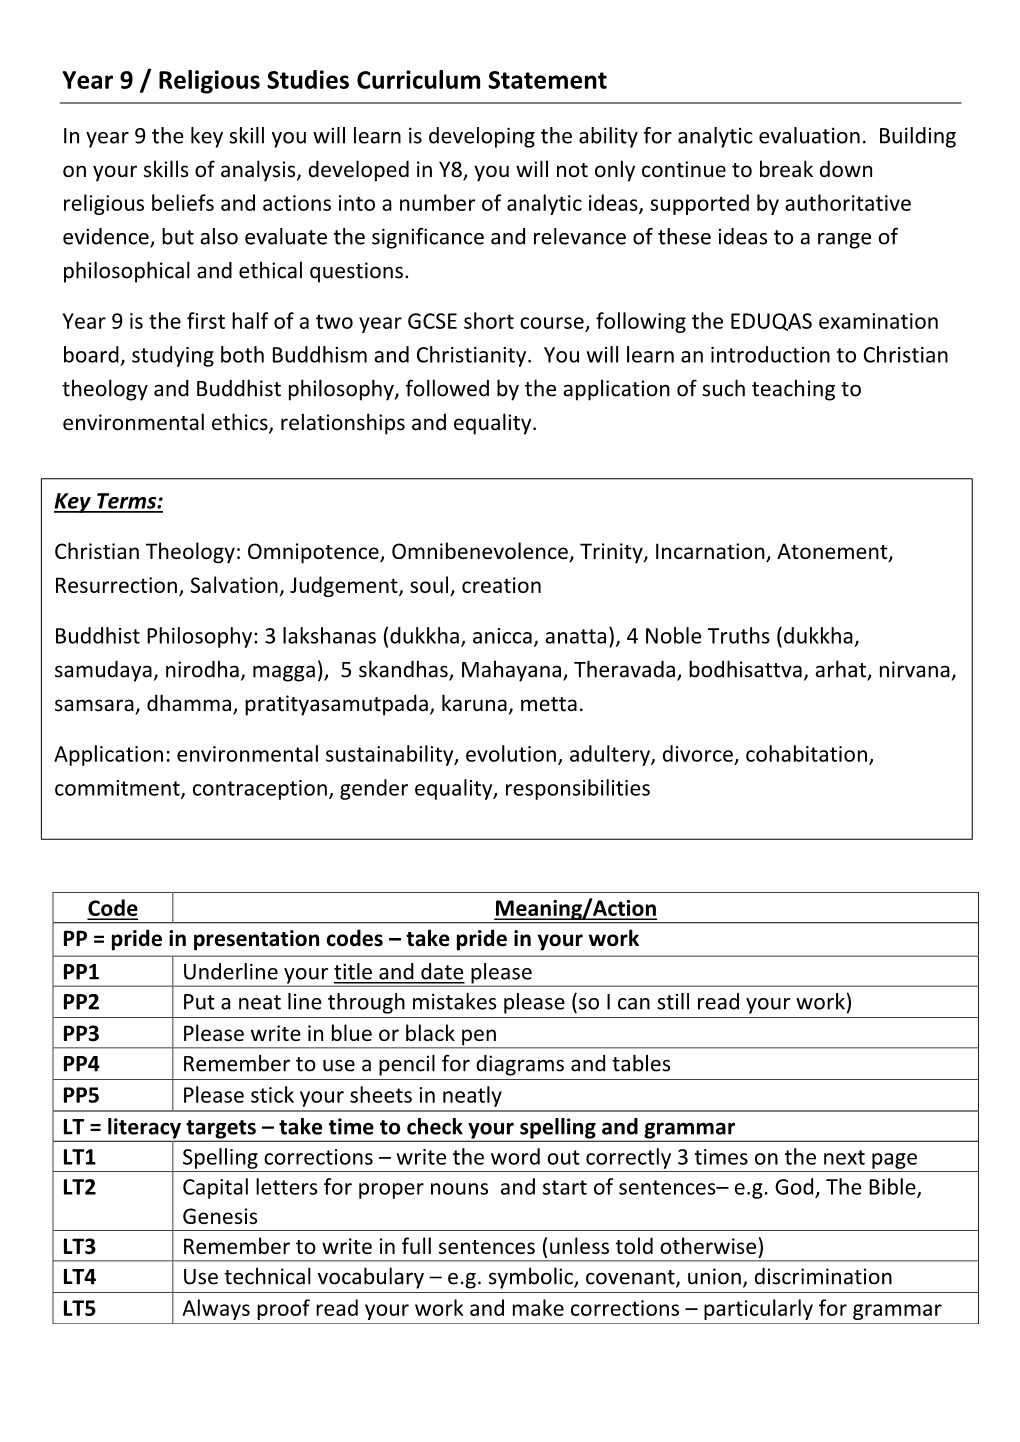 Year 9 / Religious Studies Curriculum Statement